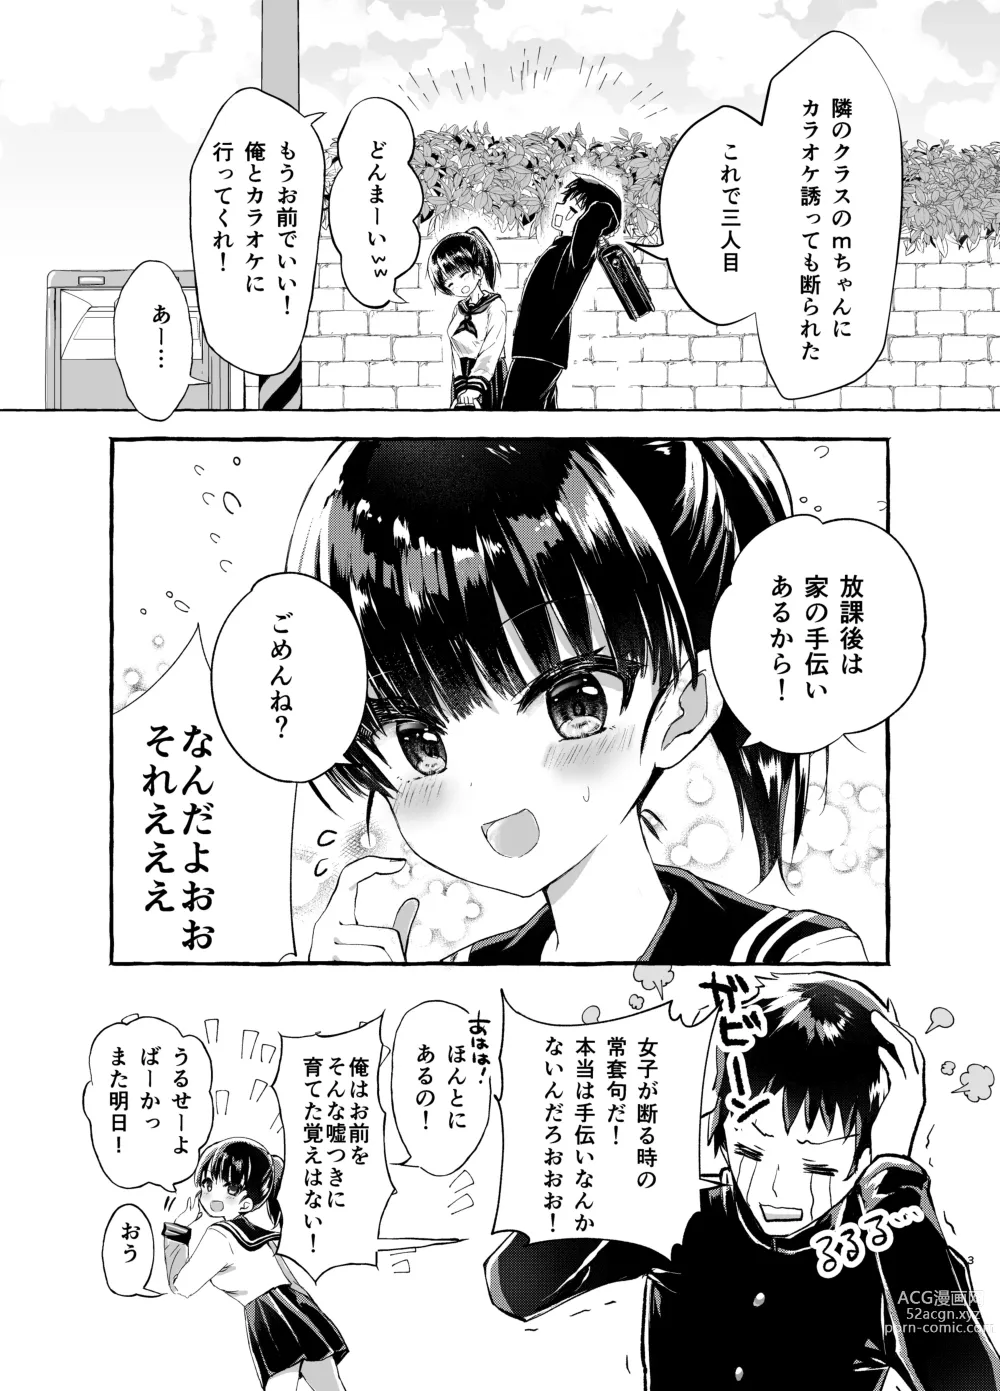 Page 3 of doujinshi Nozomi no Nakunaranai Sekai